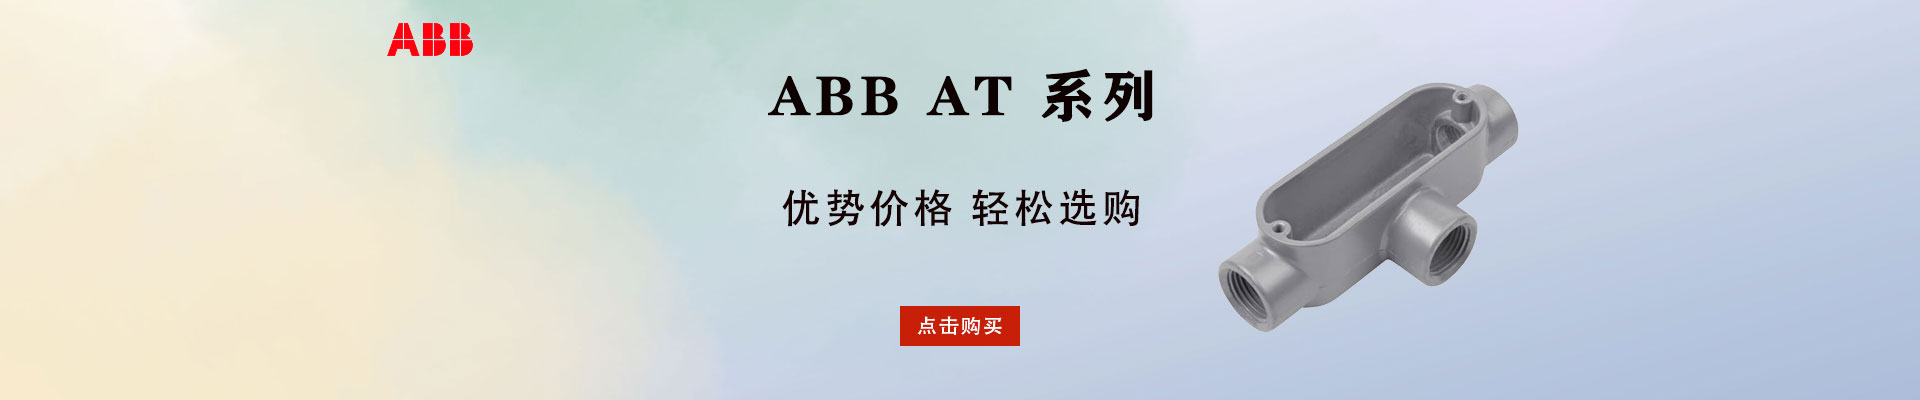 ABB|定时器